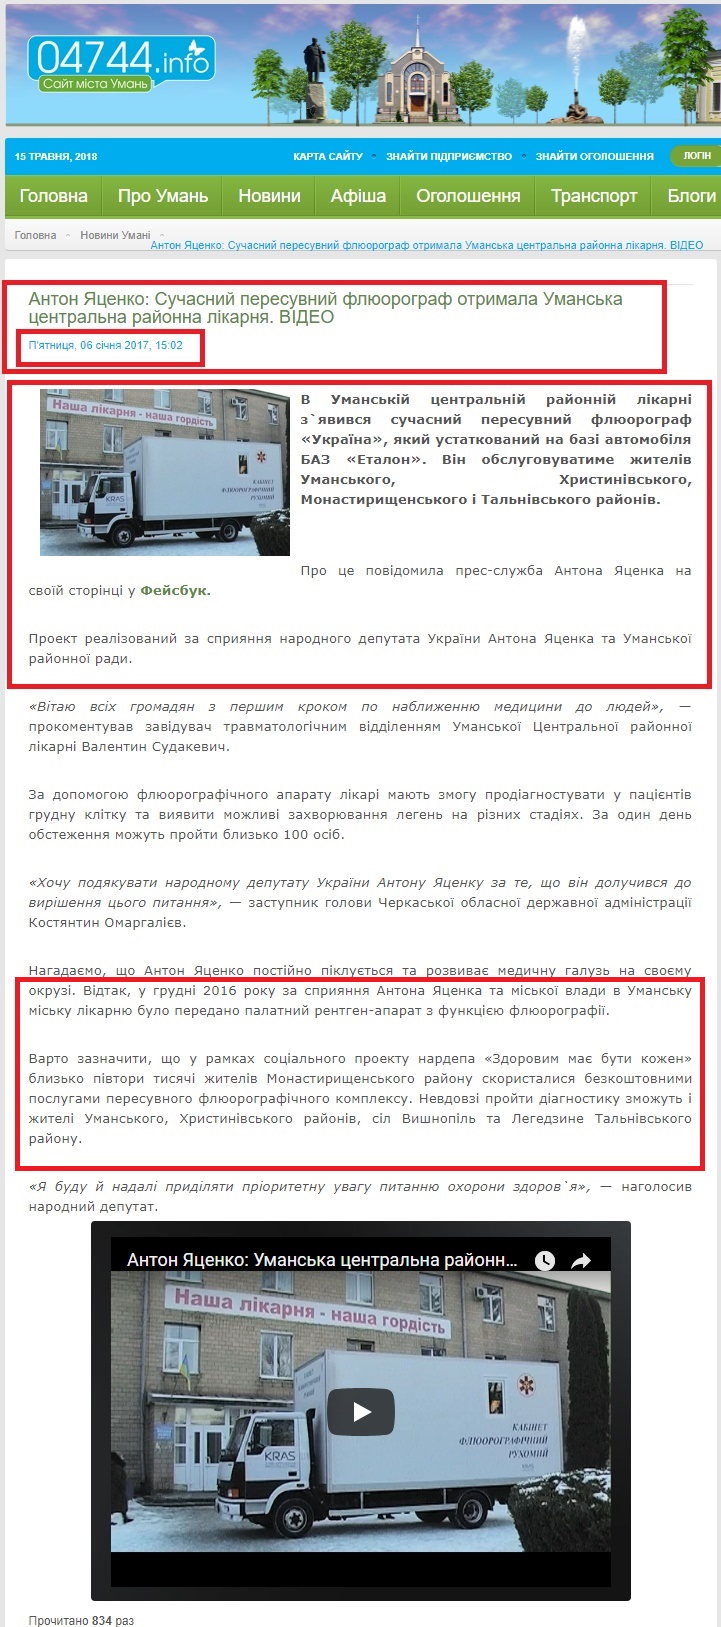 http://04744.info/novyny-umani/item/24204-anton-yatsenko